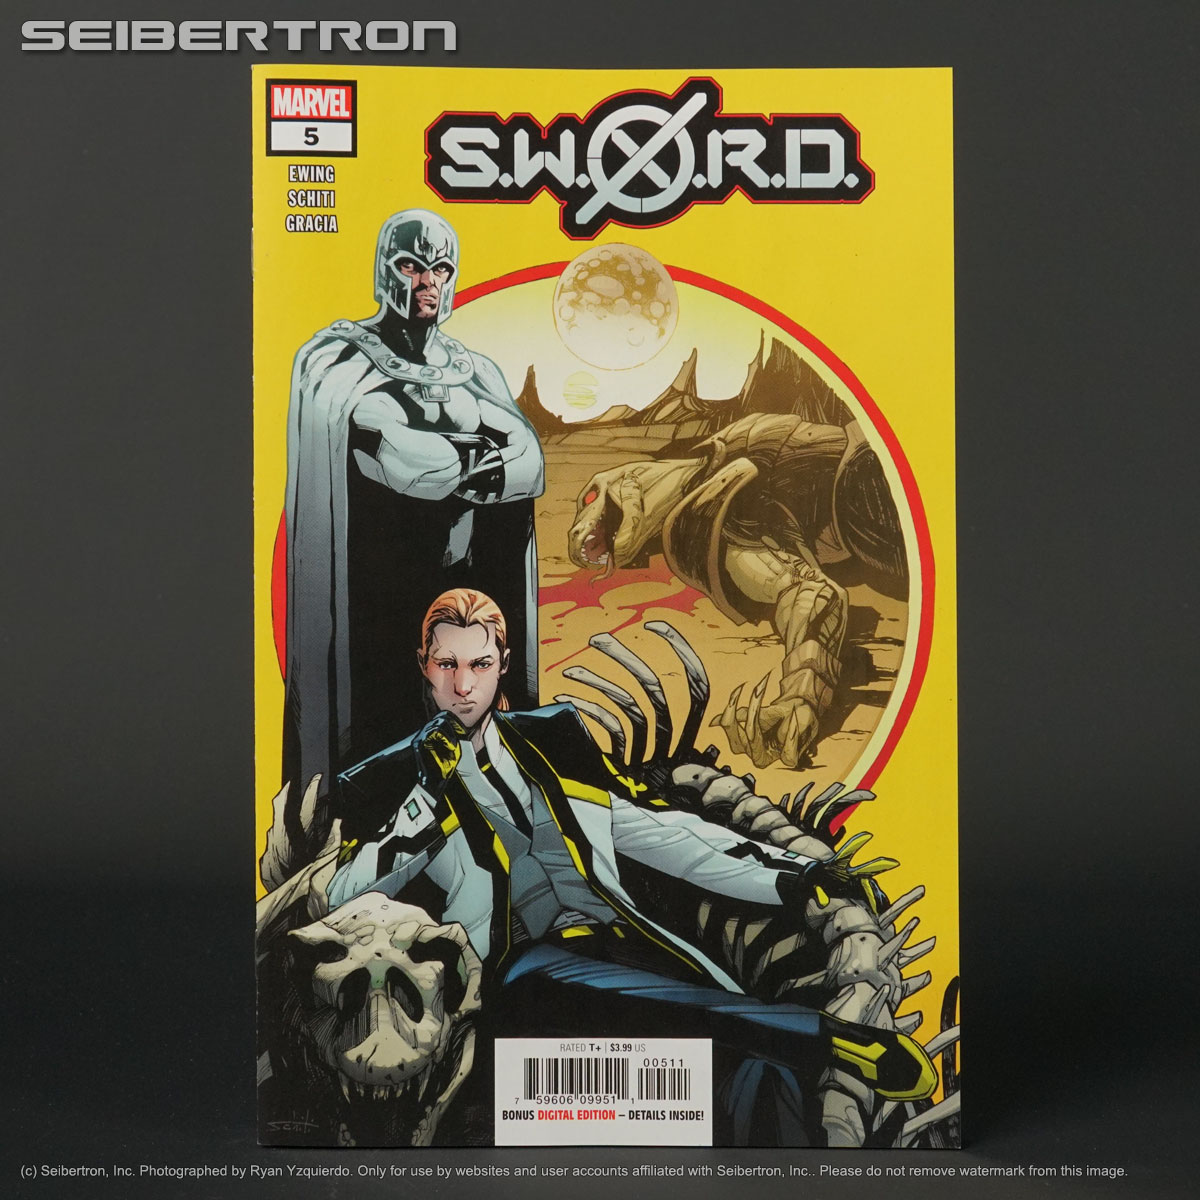 SWORD #5 Marvel Comics 2021 FEB210599 (W) Ewing (A/CA) Schiti